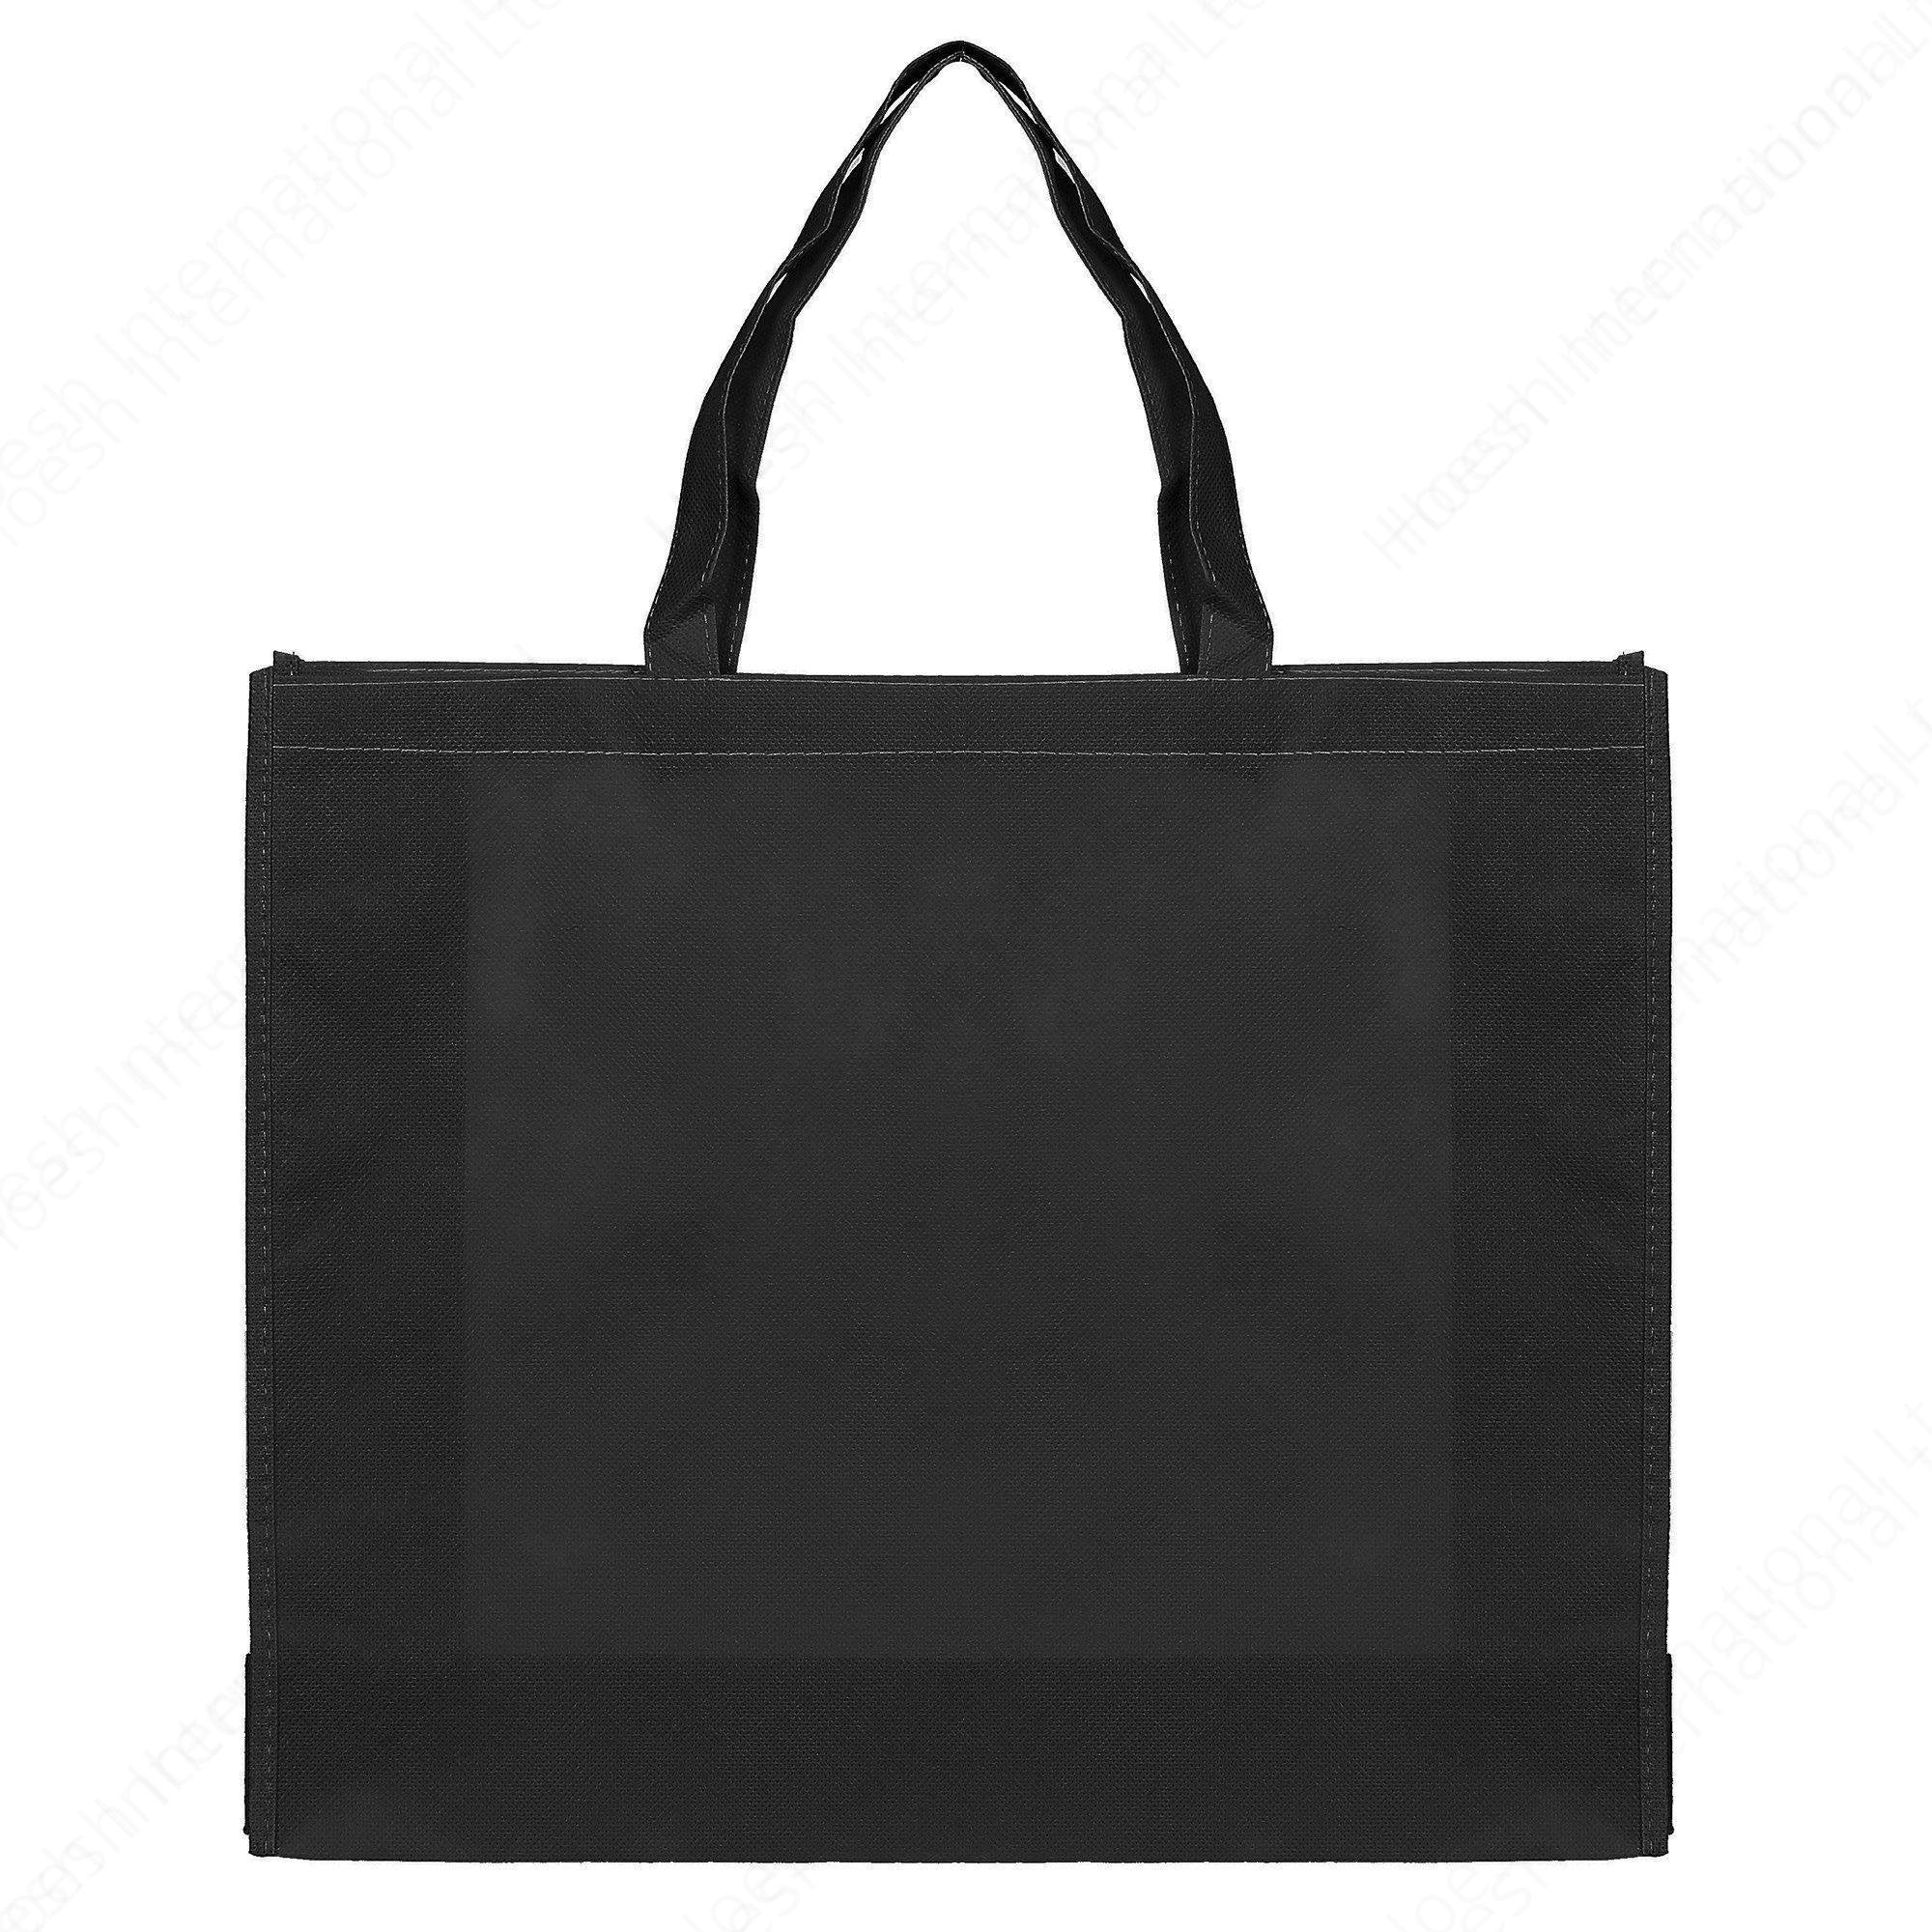 Non-Woven Carrier Bags - Hoesh International Ltd